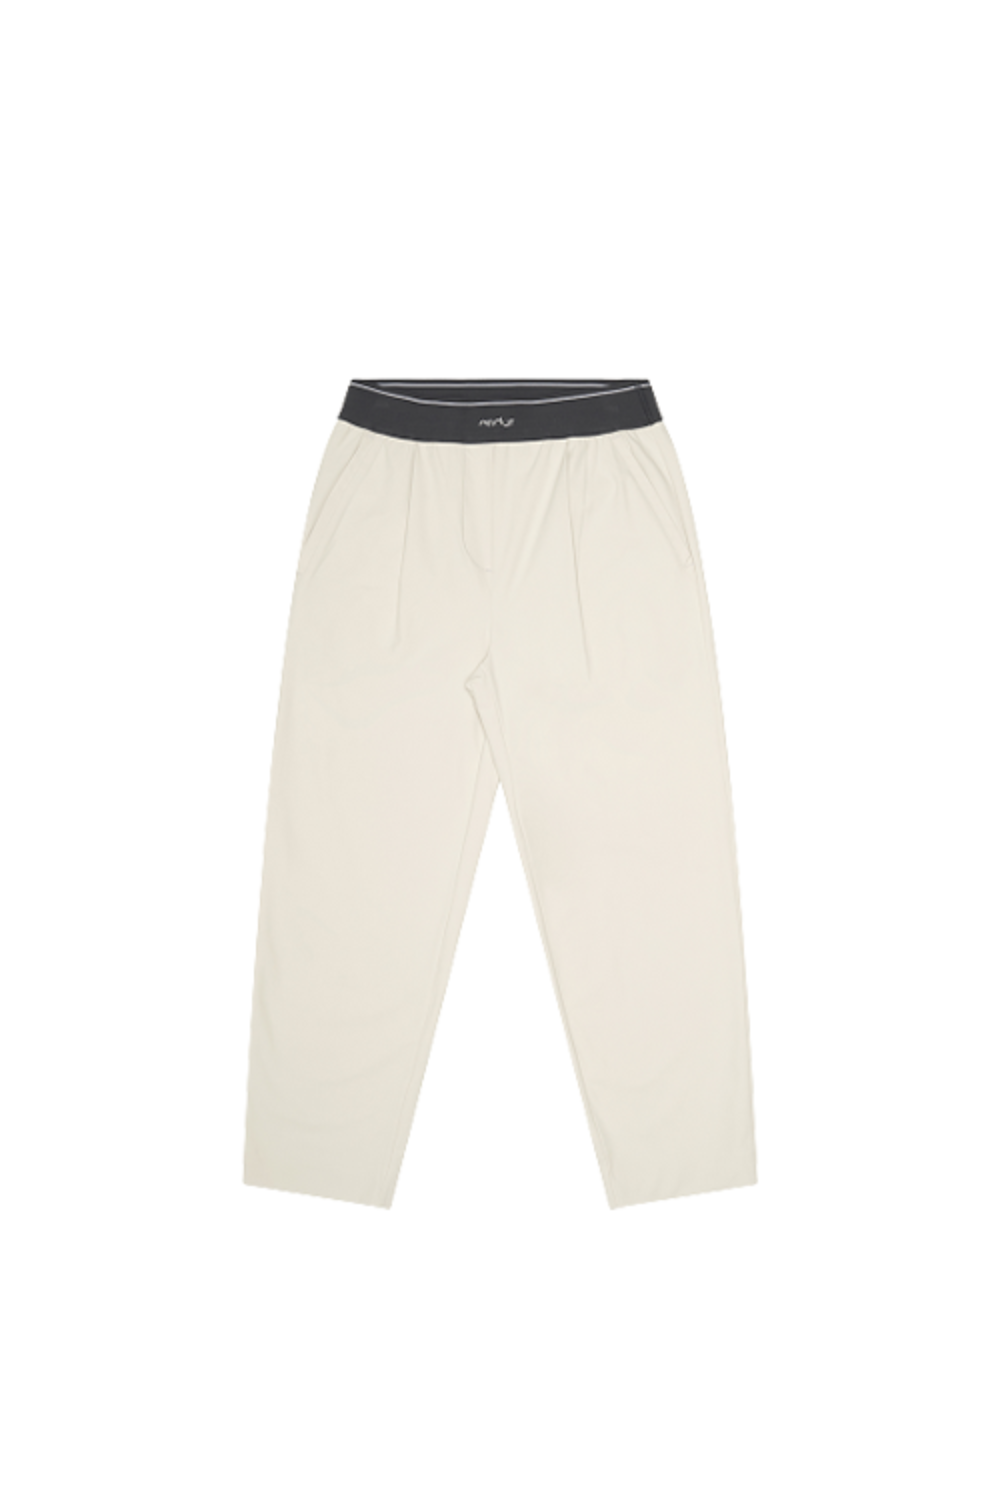 Airst Essential 7/8 Slim Fit Pants